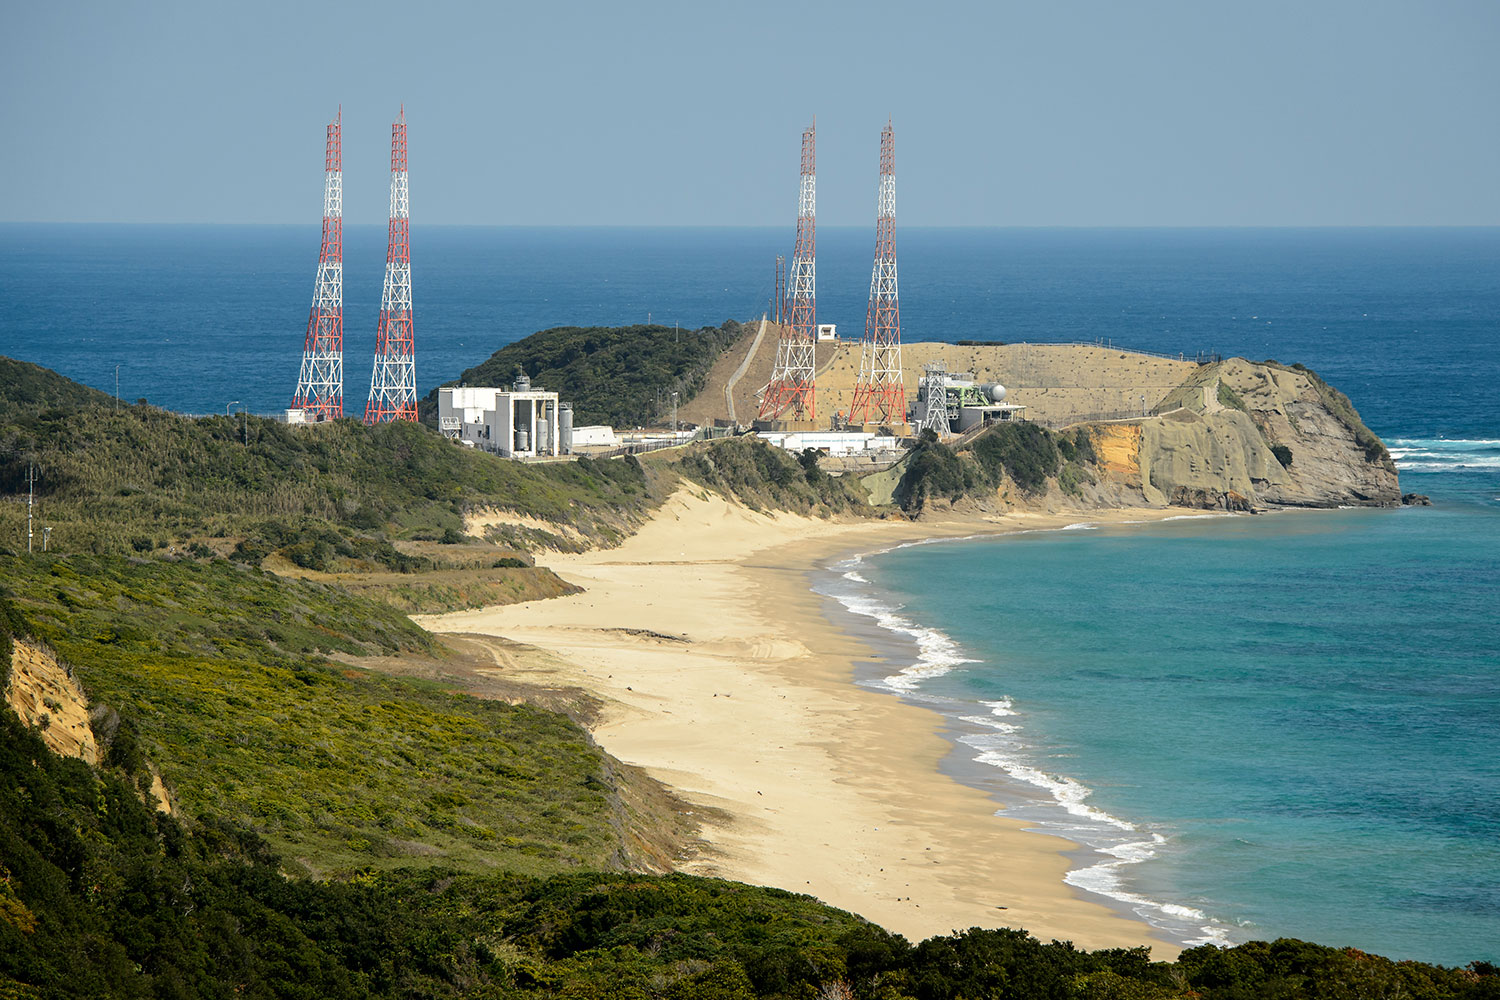 Japan’s Rocket Launch Site Looks Like A Bond Villain’s Secret Lair